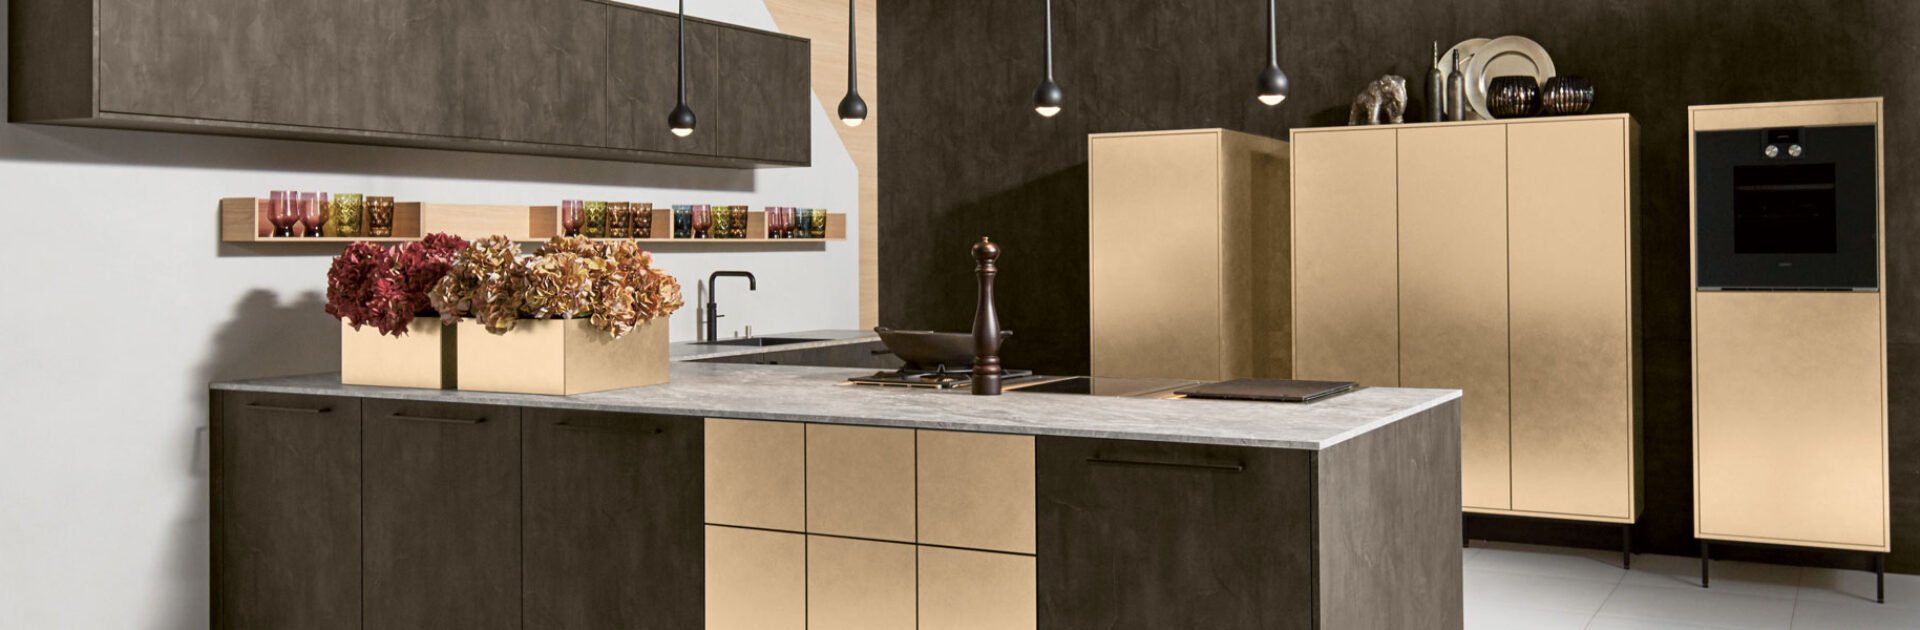 Gouden keukenfronten op een donkere keuken | Eigenhuis Keukens